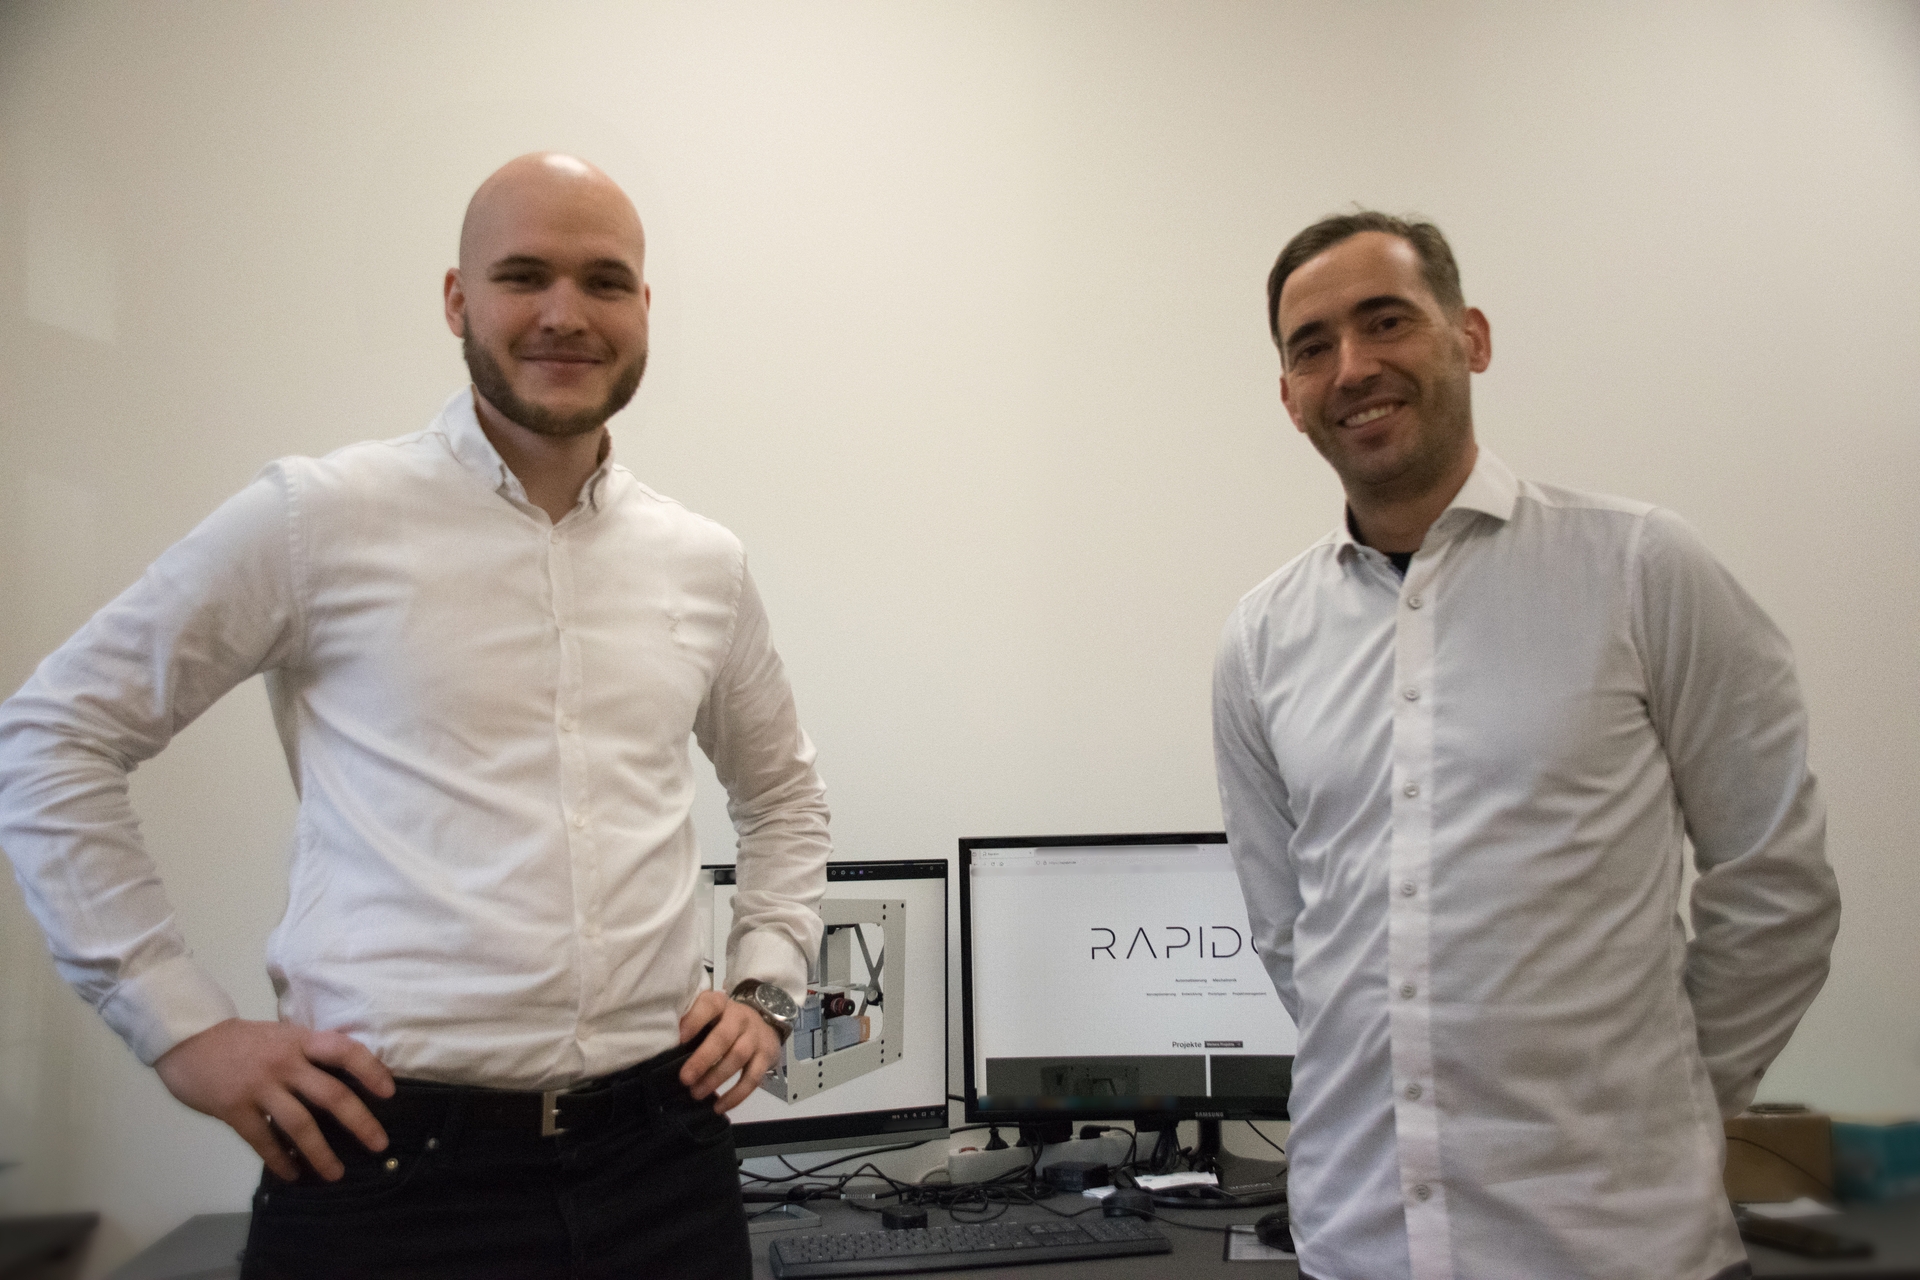 Fotografie von Rapidon-Firmengründer Daniel Fleischer und Tim Heerwagen nach Abschluss des Webprojektes "rapidon.de".